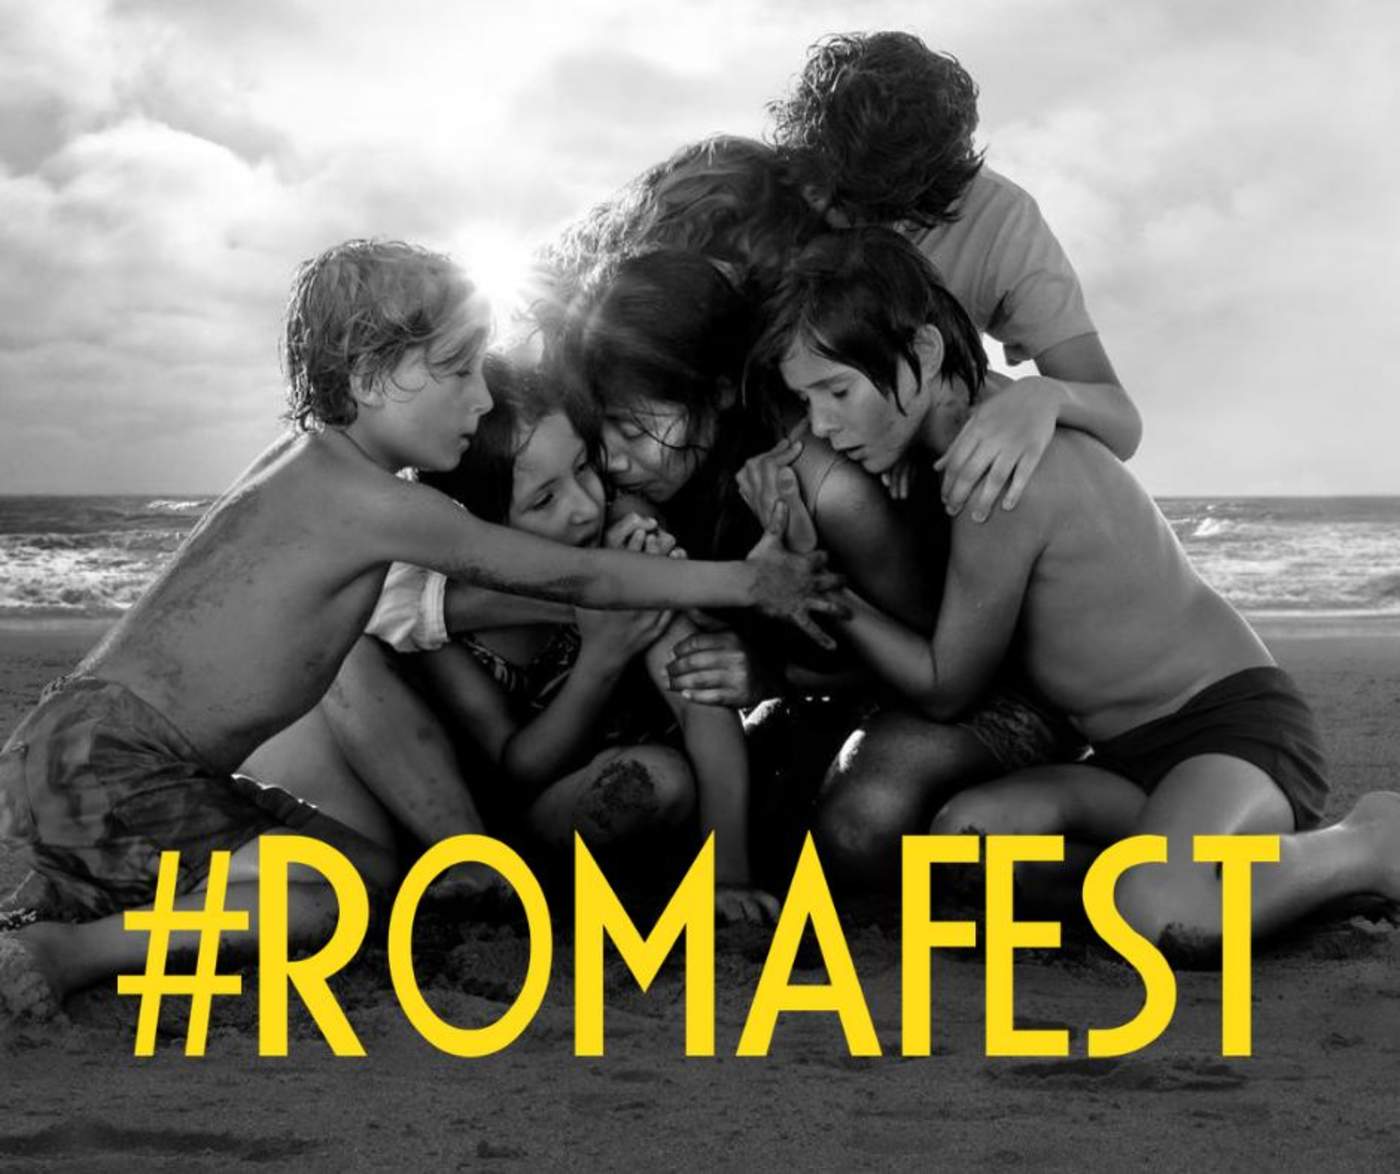 La cinta Roma compite en 10 categorías en los premios Oscar. (ESPECIAL)